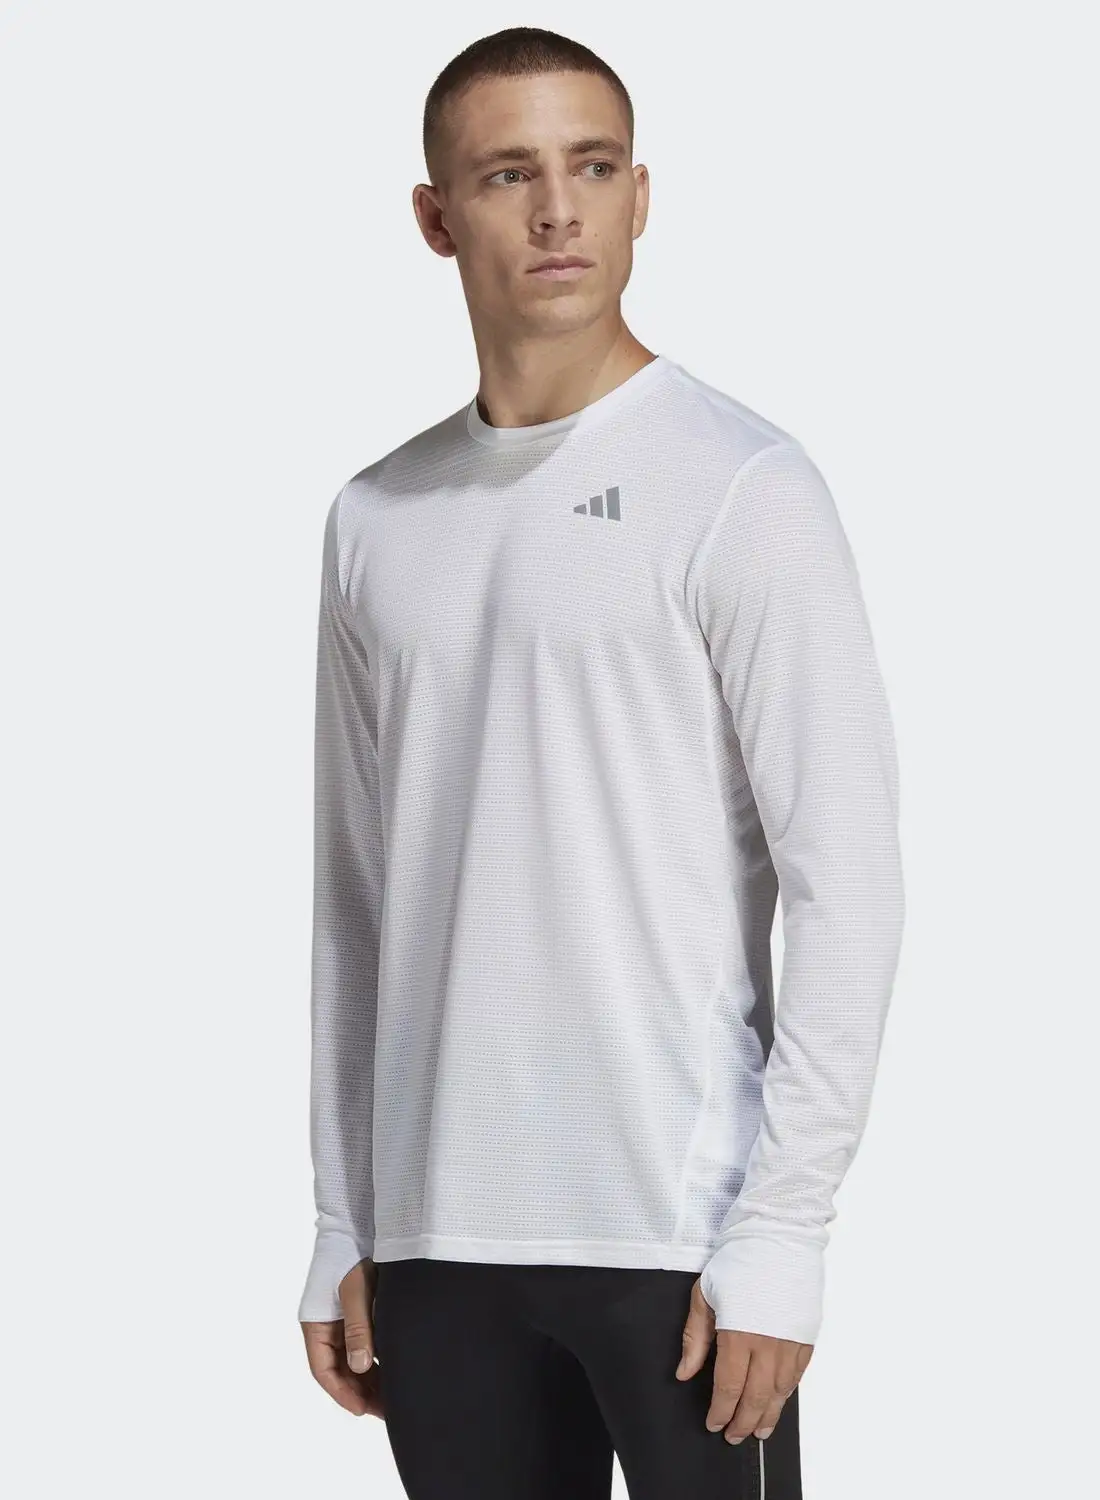 Adidas Own The Run T-Shirt